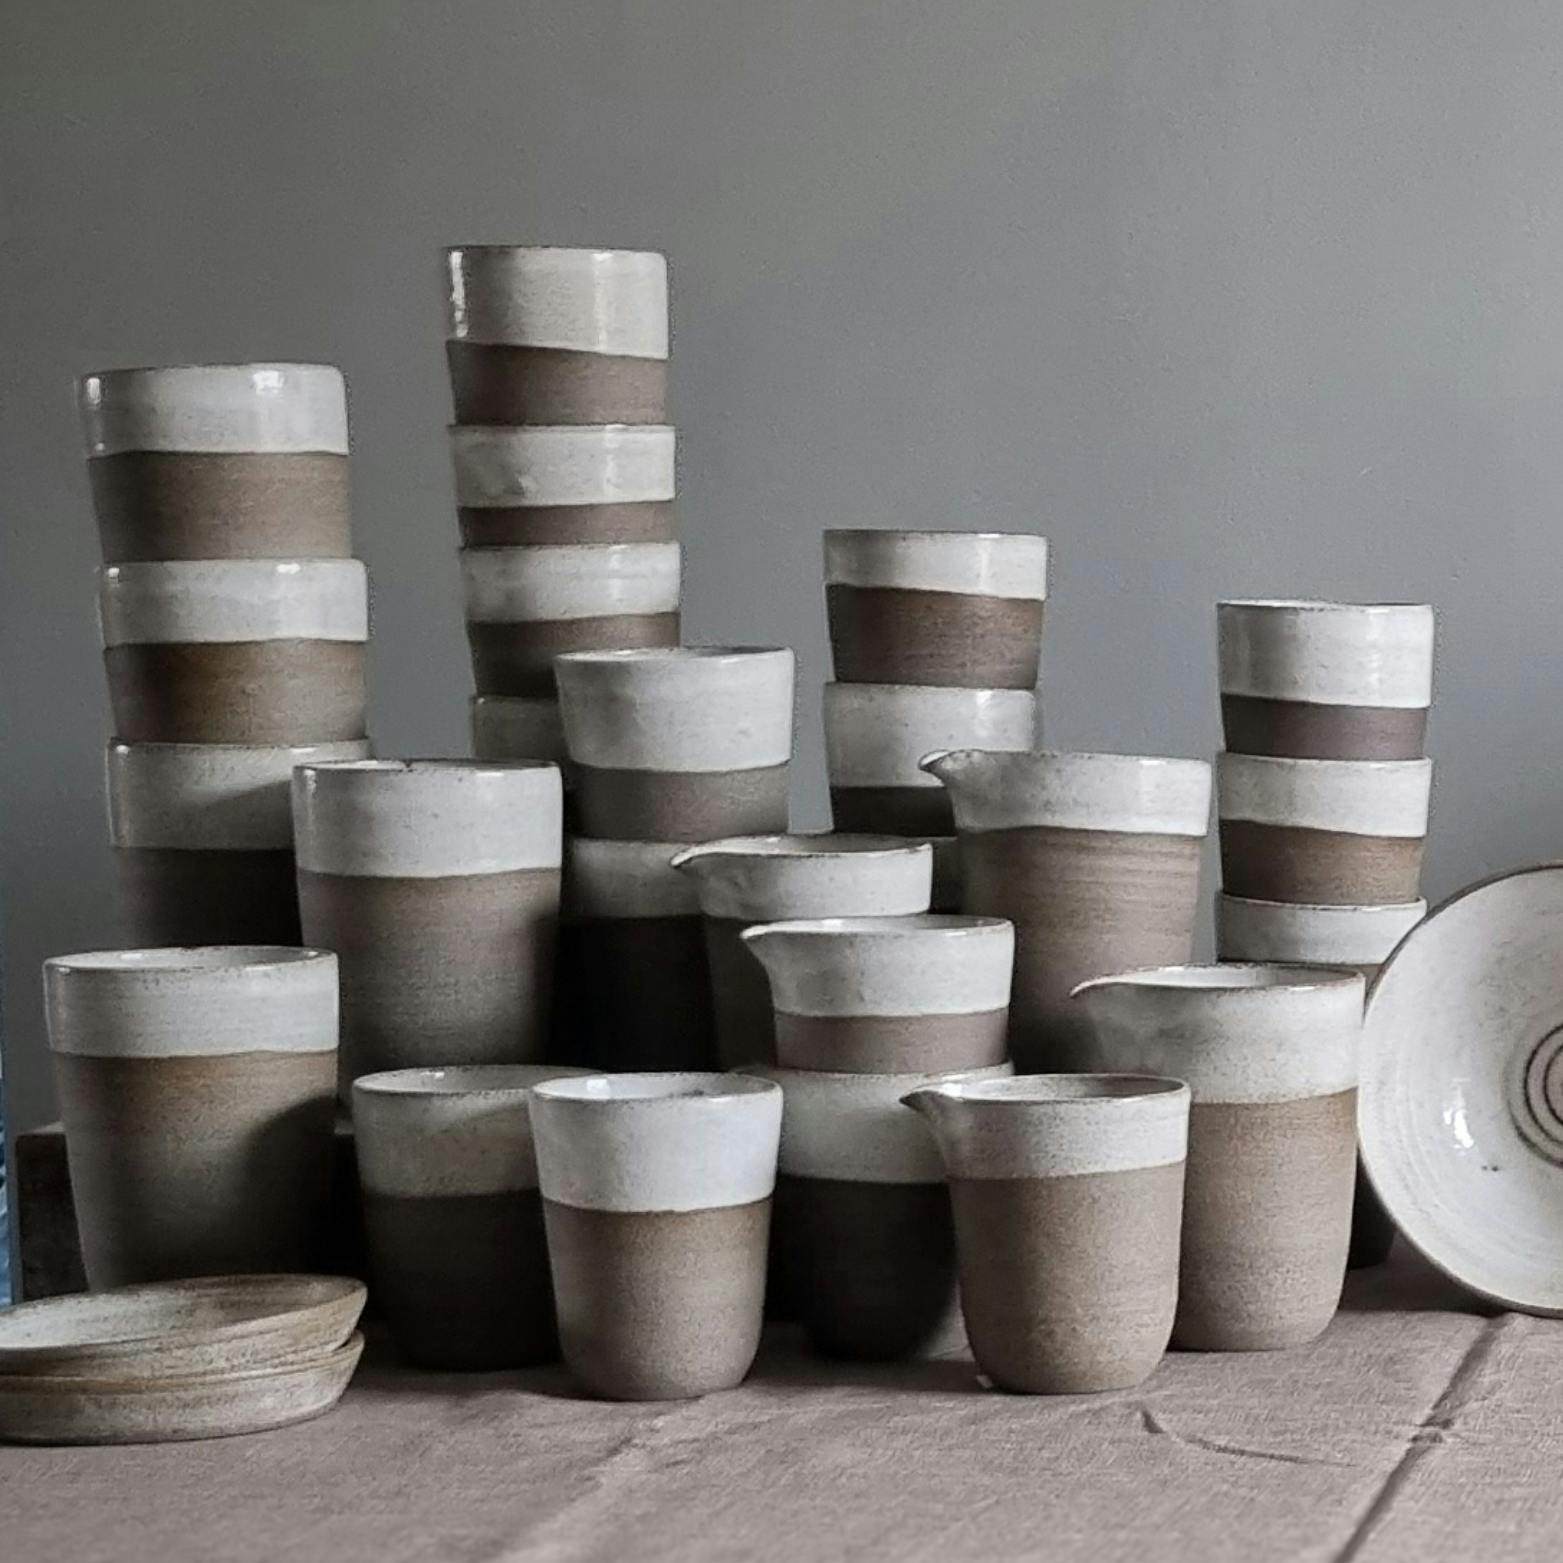 Drejade muggar av Ellen Lannemyr, Lervis keramikverkstad